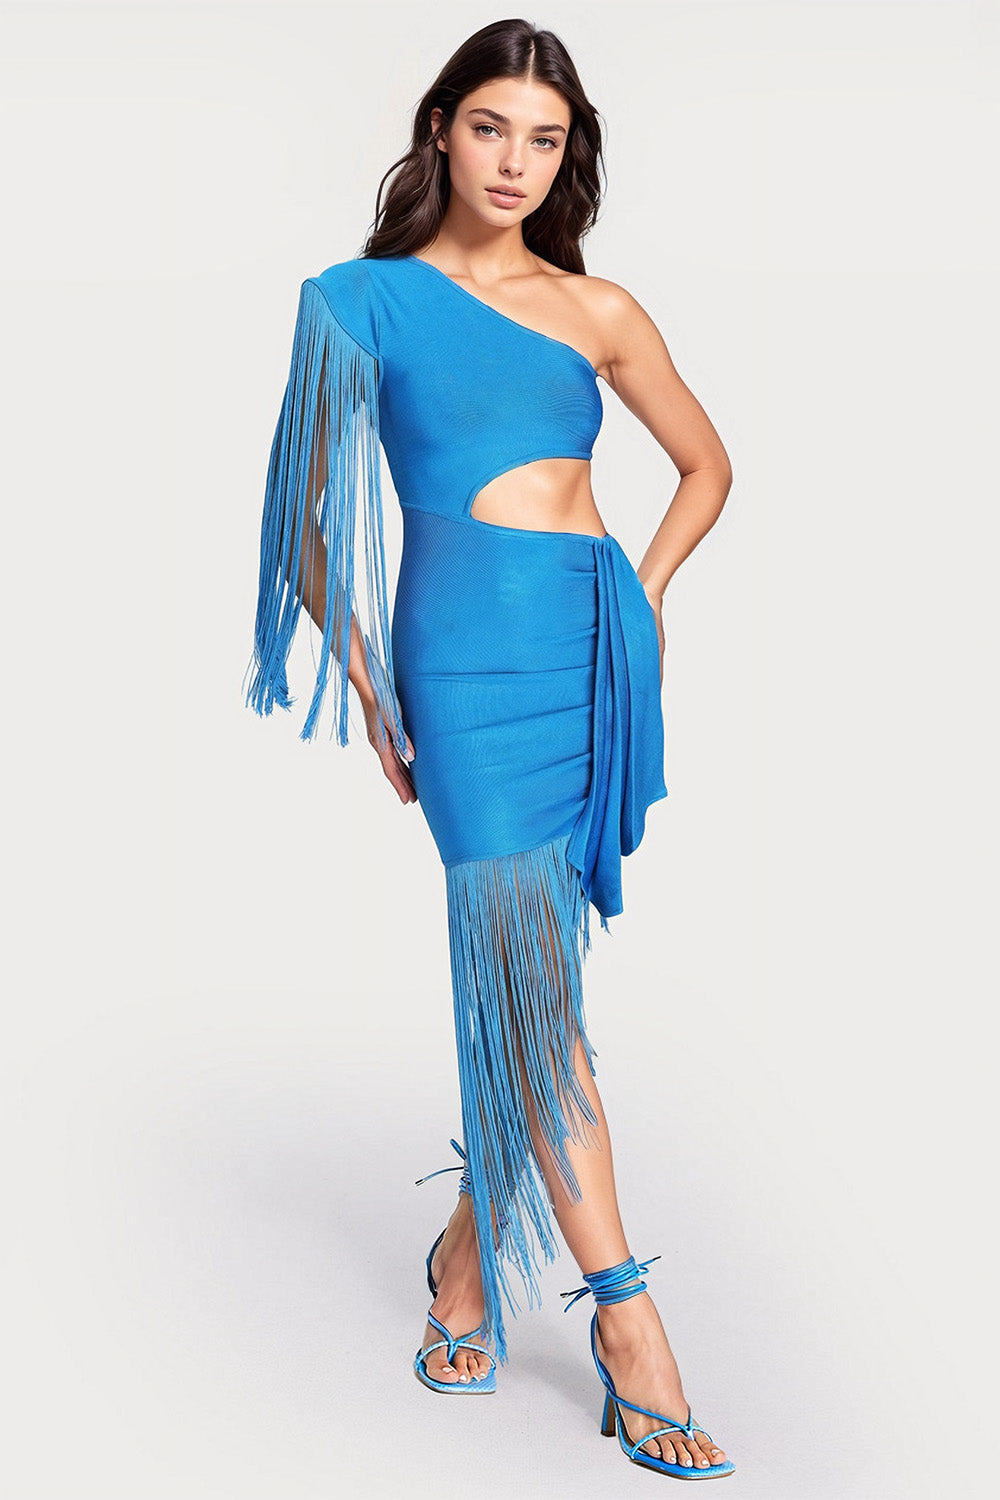 Off-Shoulder Cut-Out Dress with Fringe - Blue